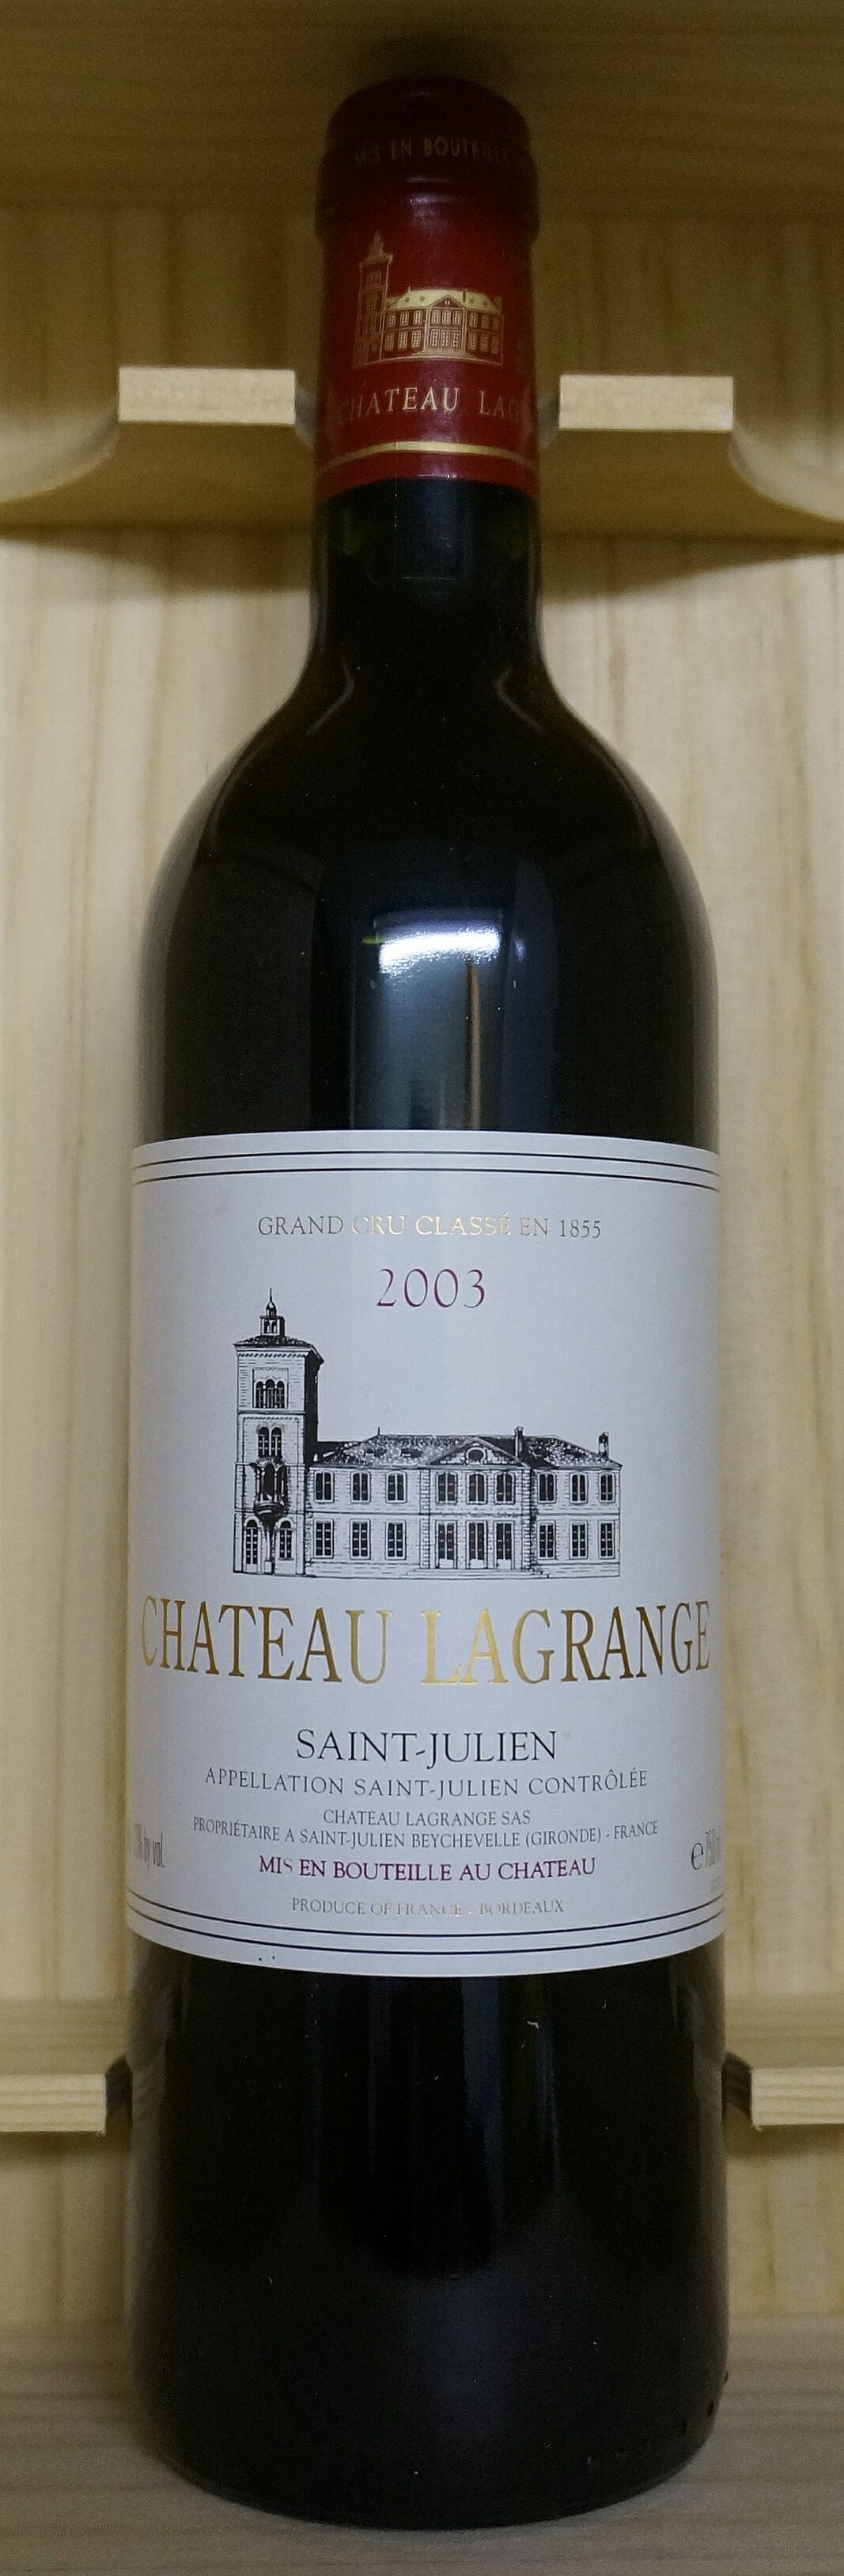 Chateau Lagrangelシャトー・ラグランジュ[2004]750ml Ch. LagrangeSaint Julien